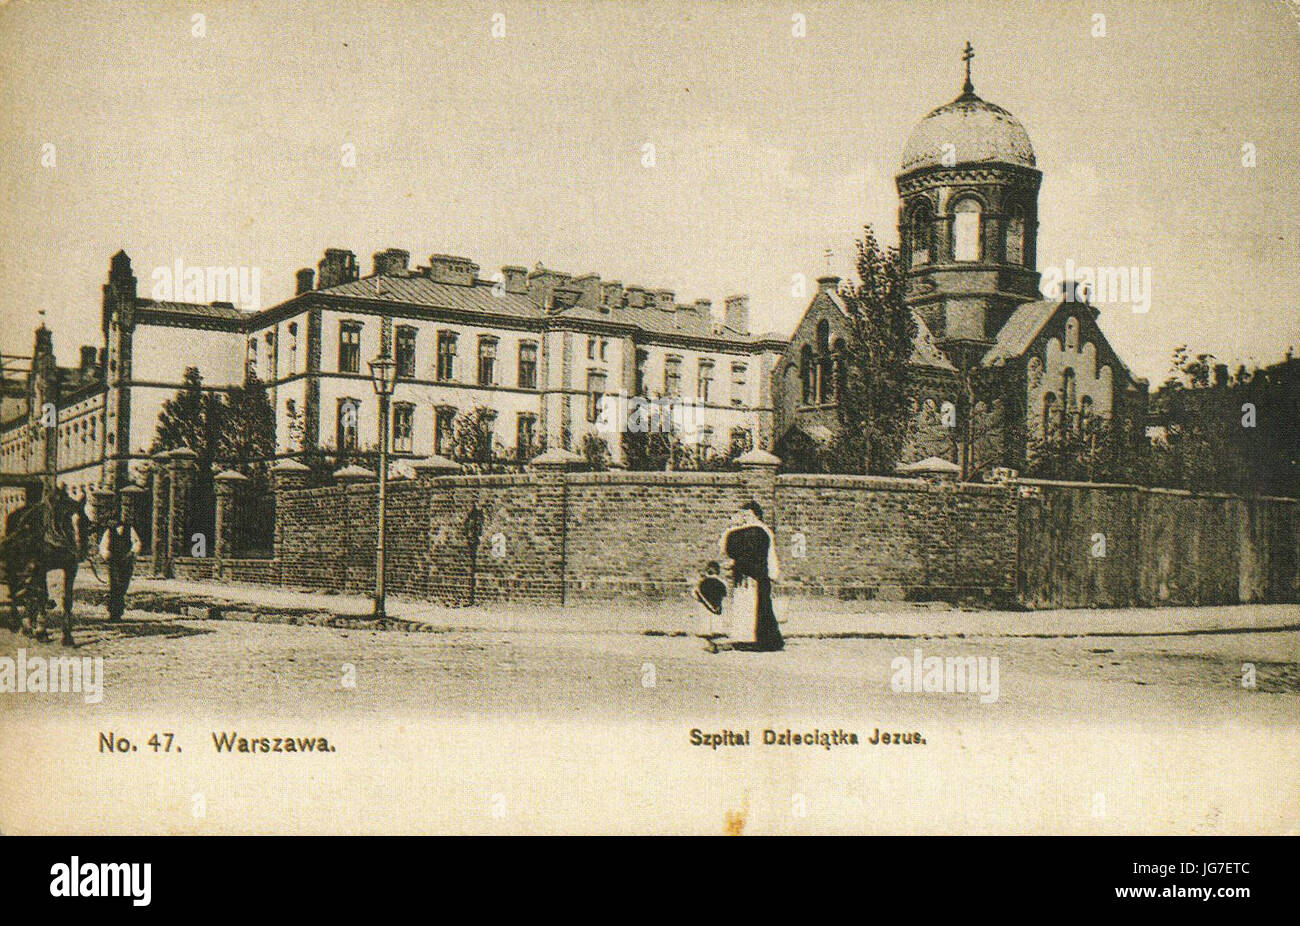 Szpital Dzieciątka Jezus cerkiew Matki Boskiej Nieustającej Pomocy w Warszawie 1908 Stock Photo